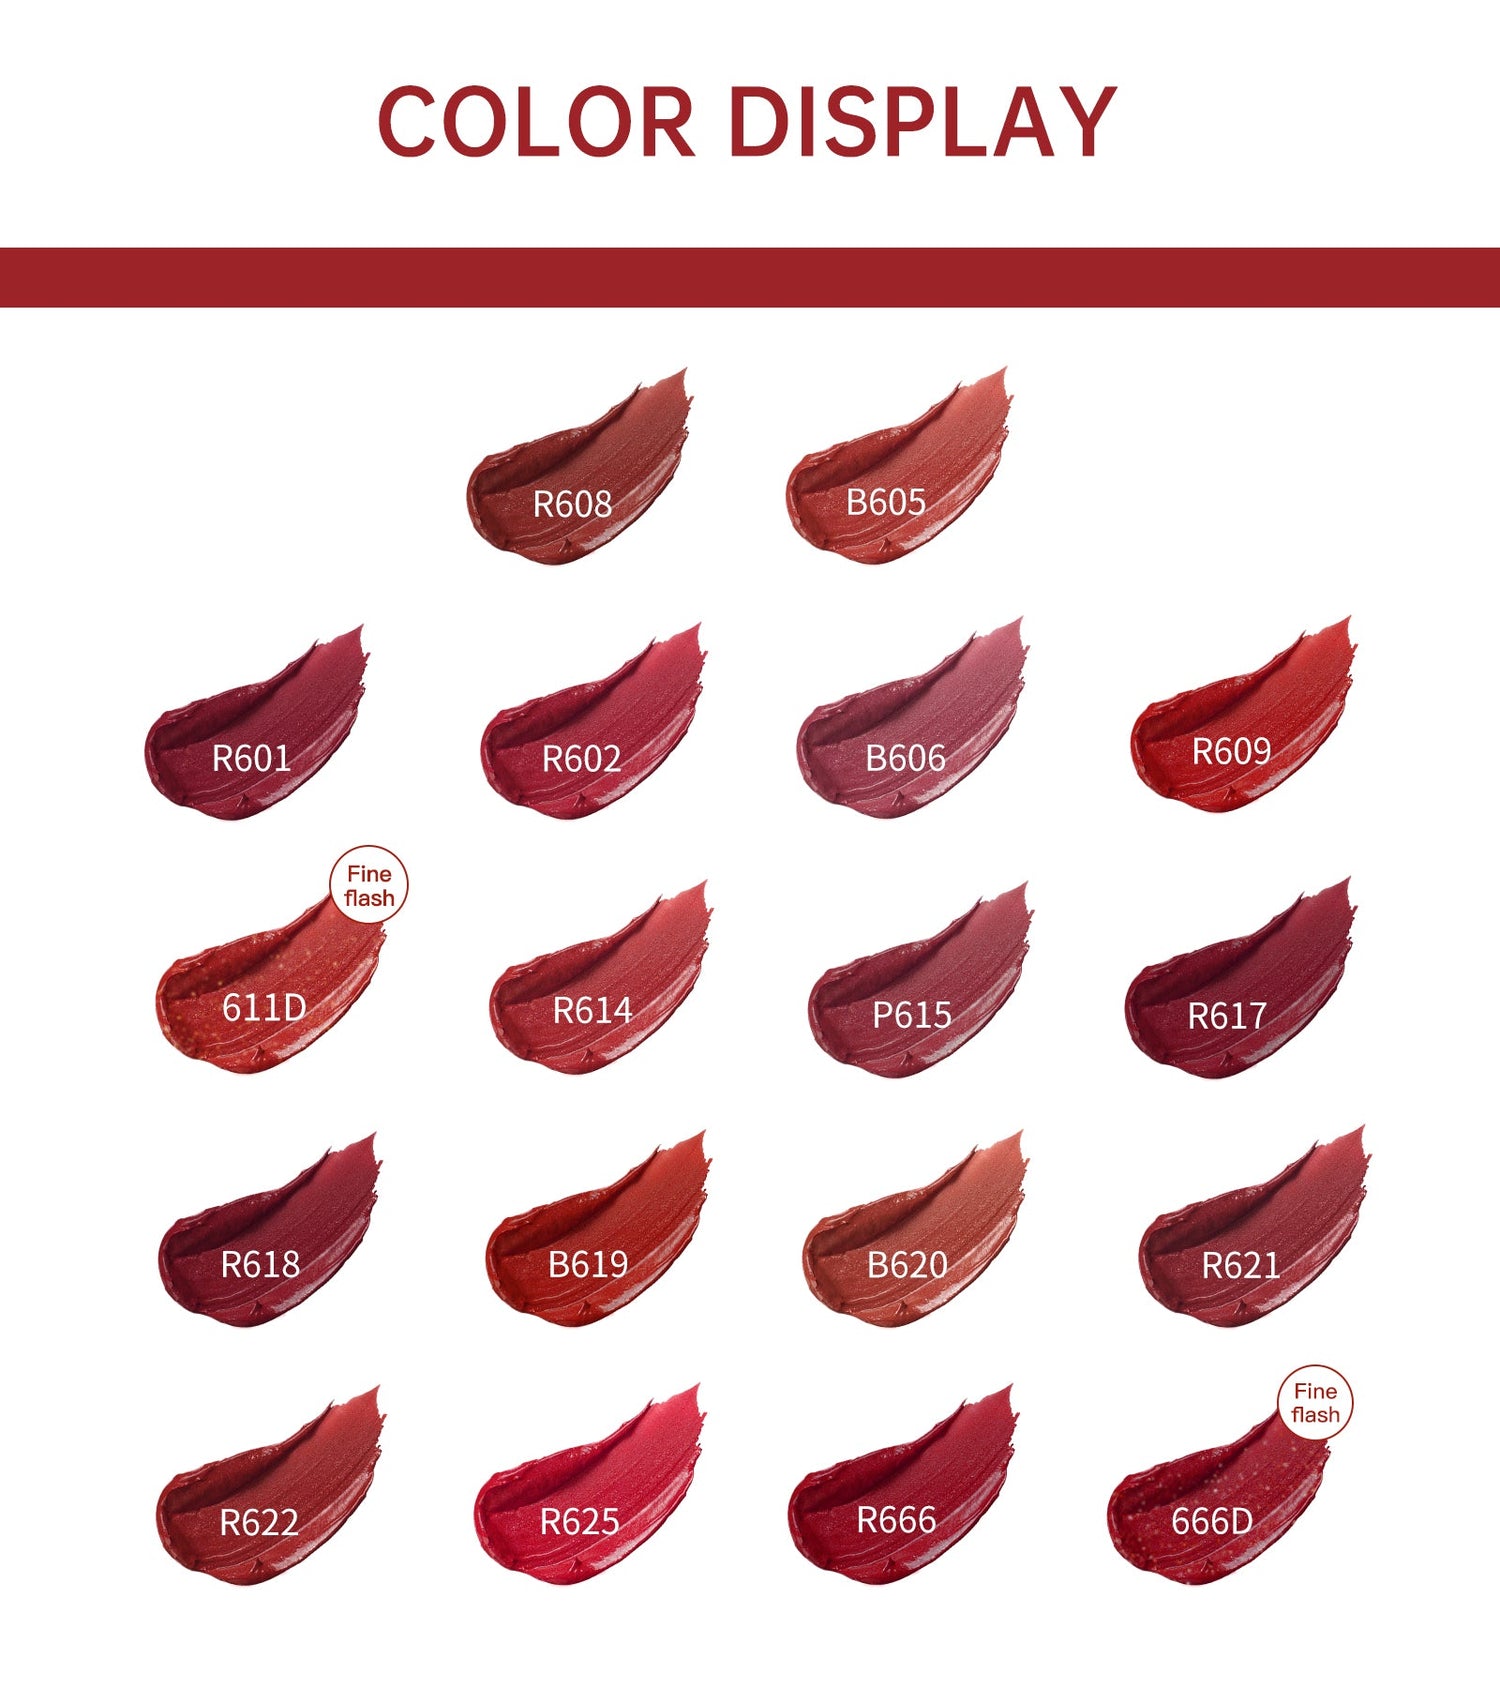 Airy Lip Gloss Velvet Series B605 - 0cm